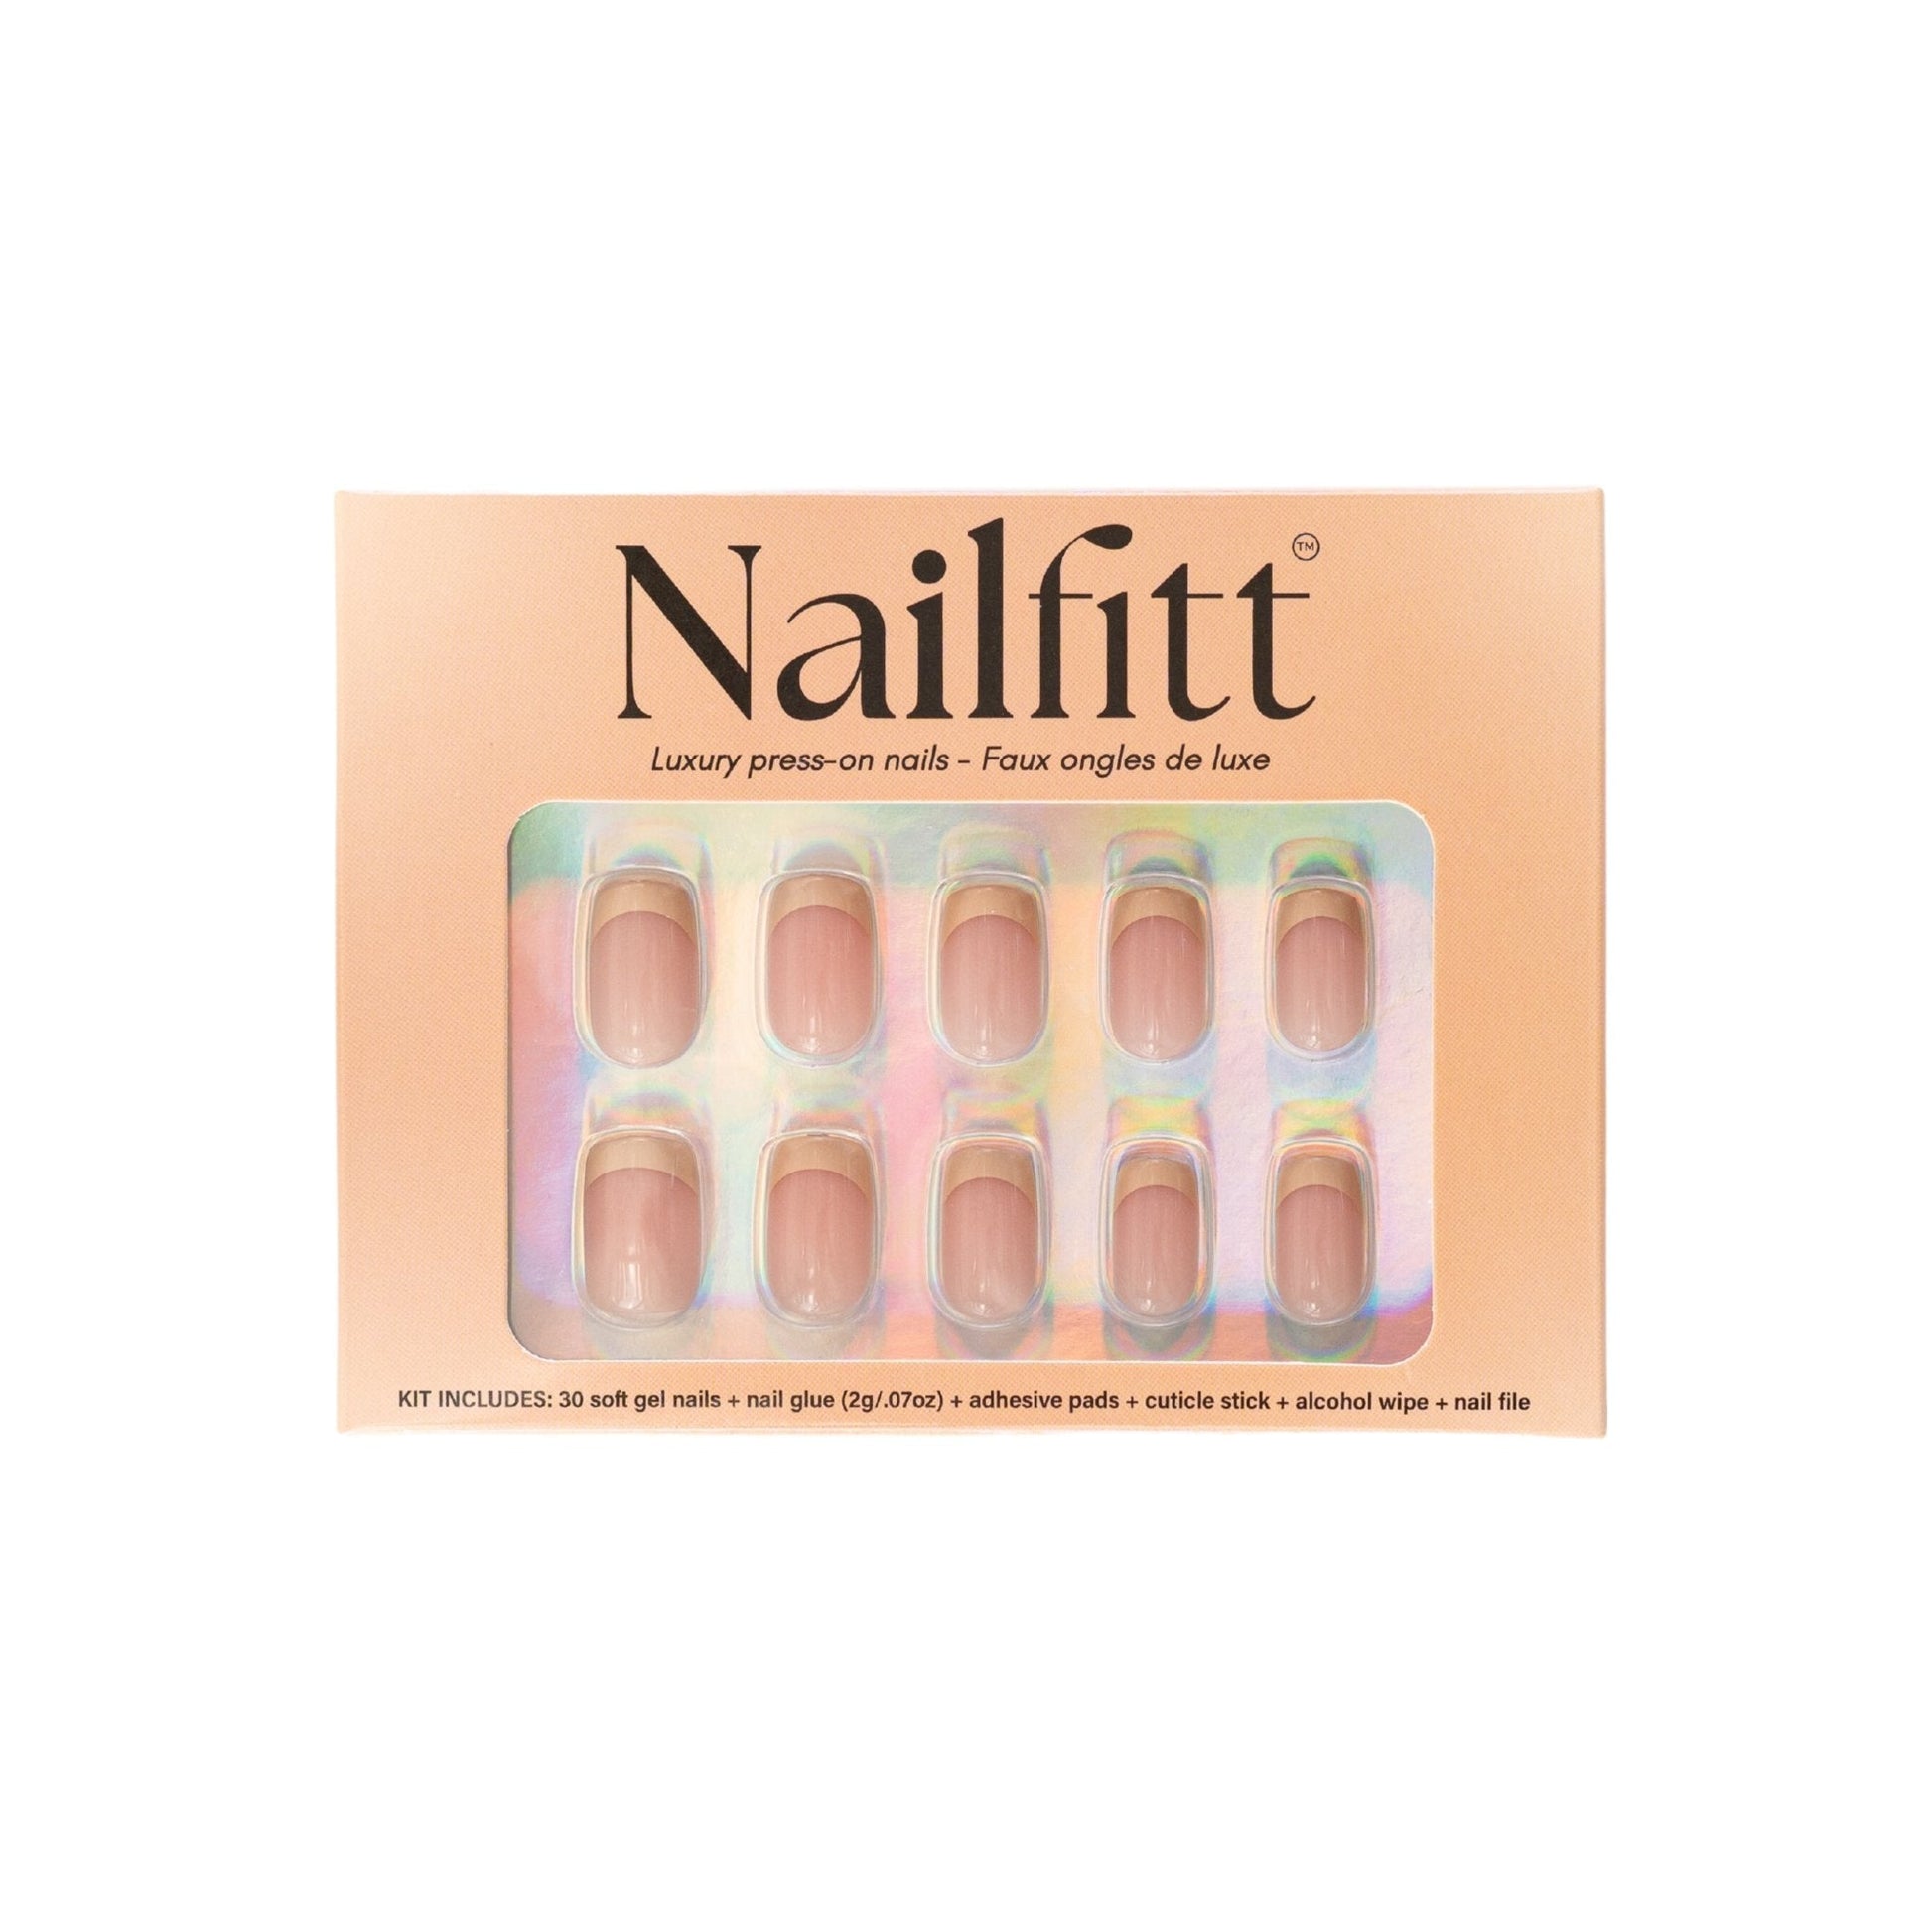 French nude - Nailfitt